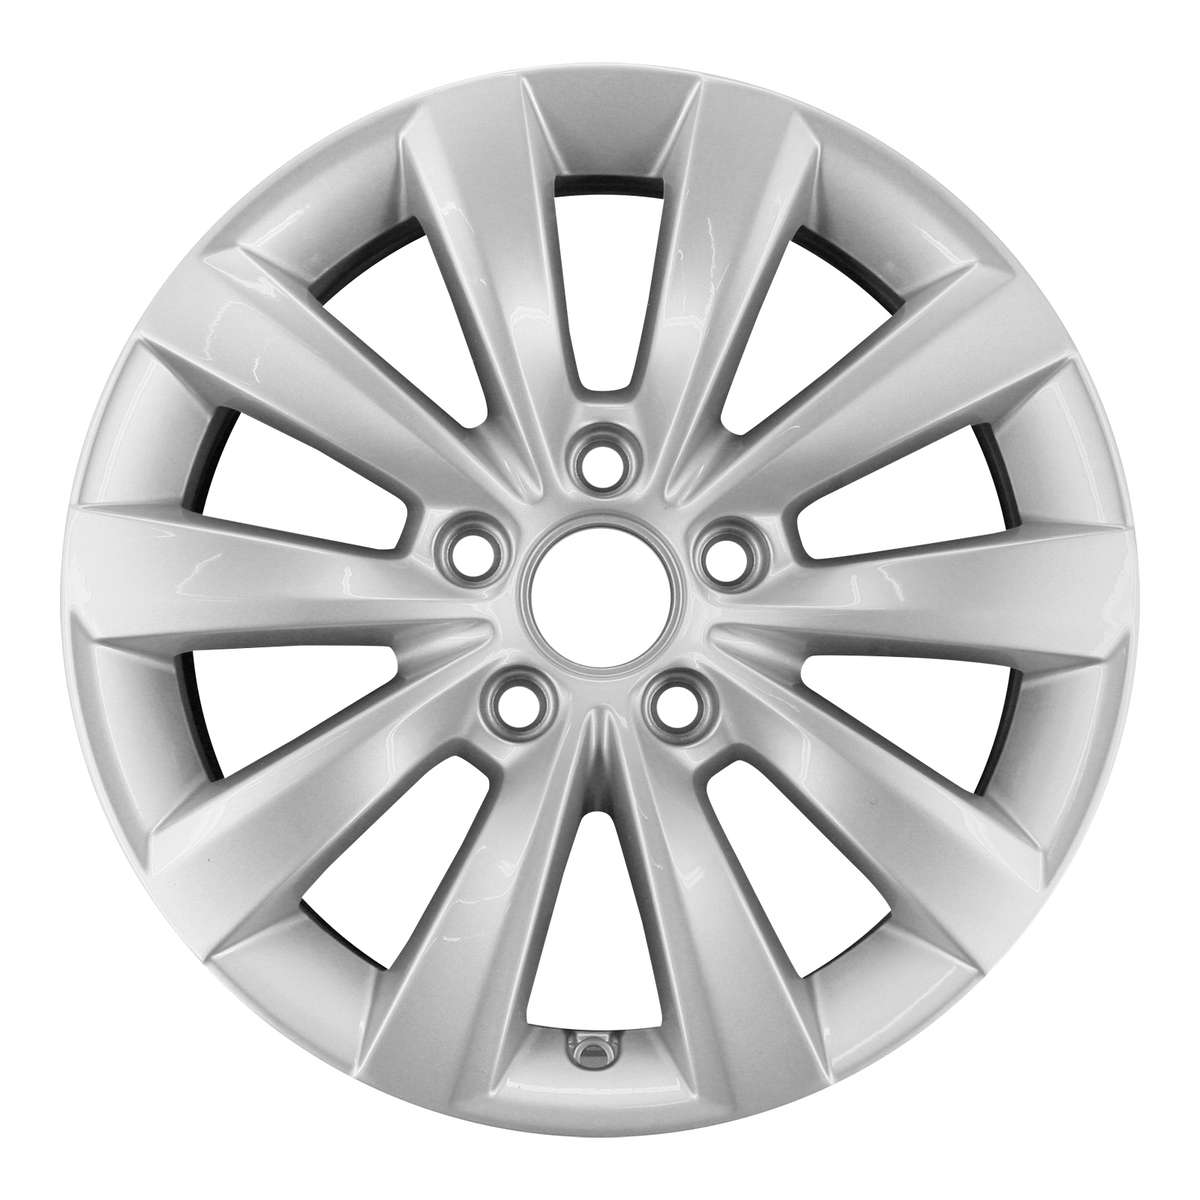 2013 Volkswagen Passat 16" OEM Wheel Rim San Jose W69927S